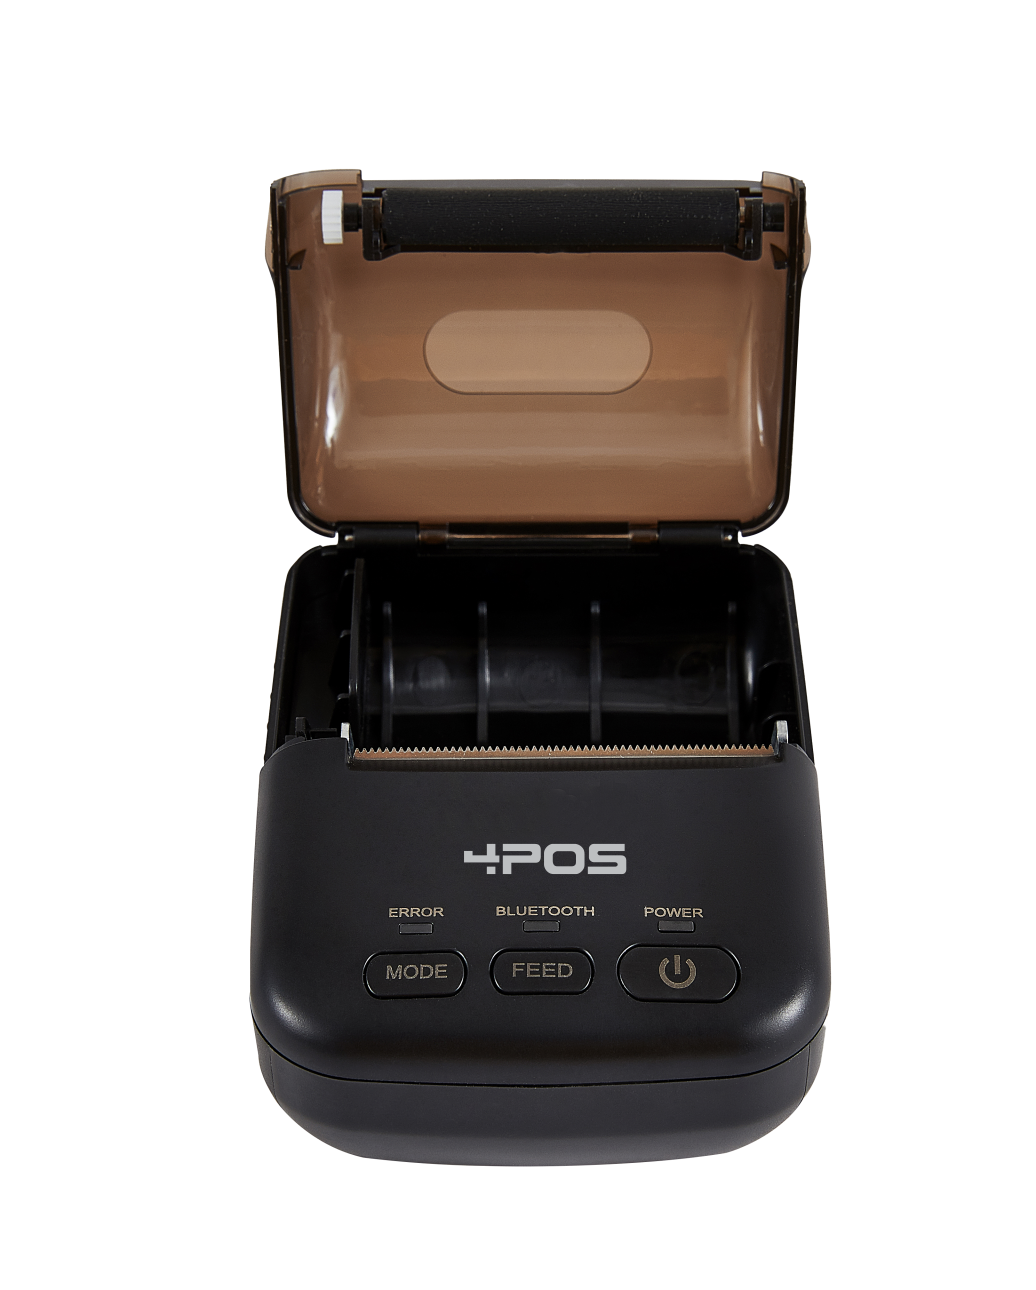 4POS 58mm BLUETOOTH & USB Thermal Printer